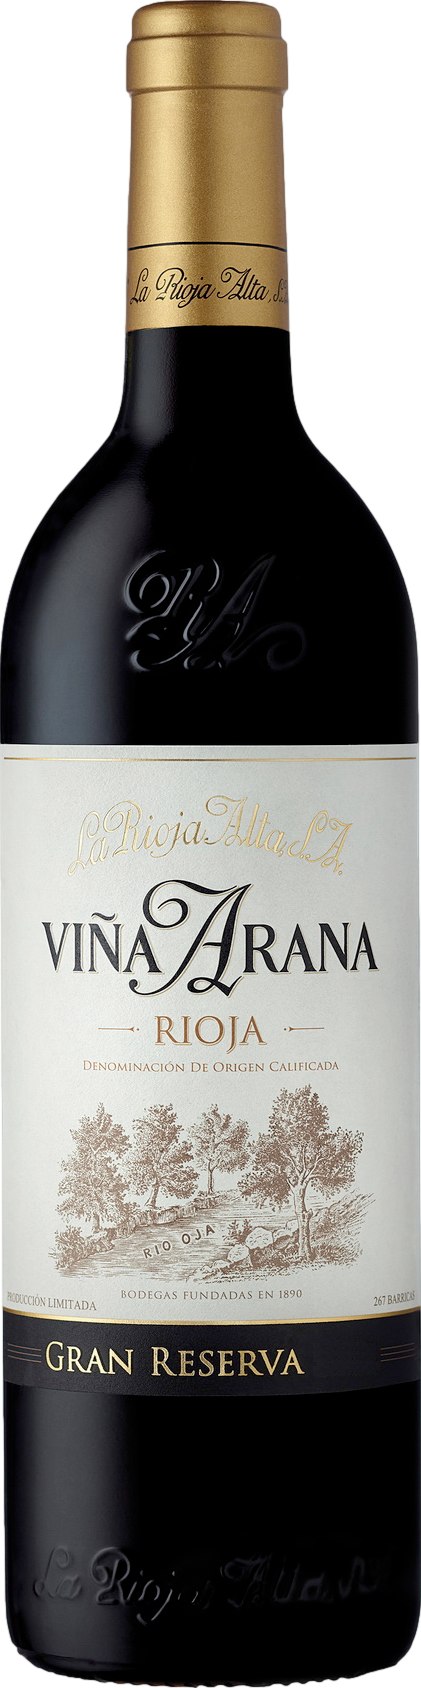 La Rioja Alta Gran Reserva Vina Arana 2016